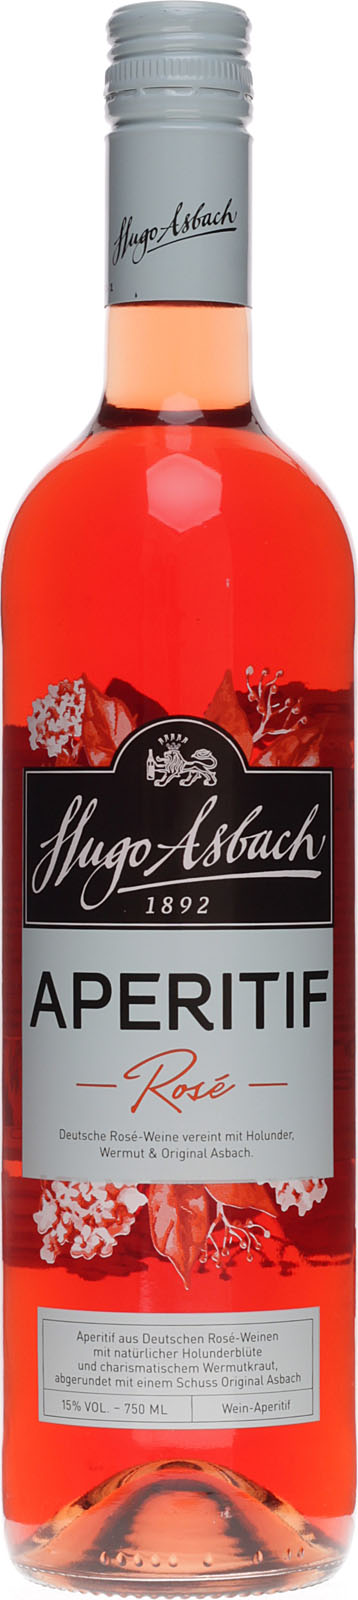 fruchtige 15 Vol. 0,75 aus Asbach % Liter Aperitif Rose